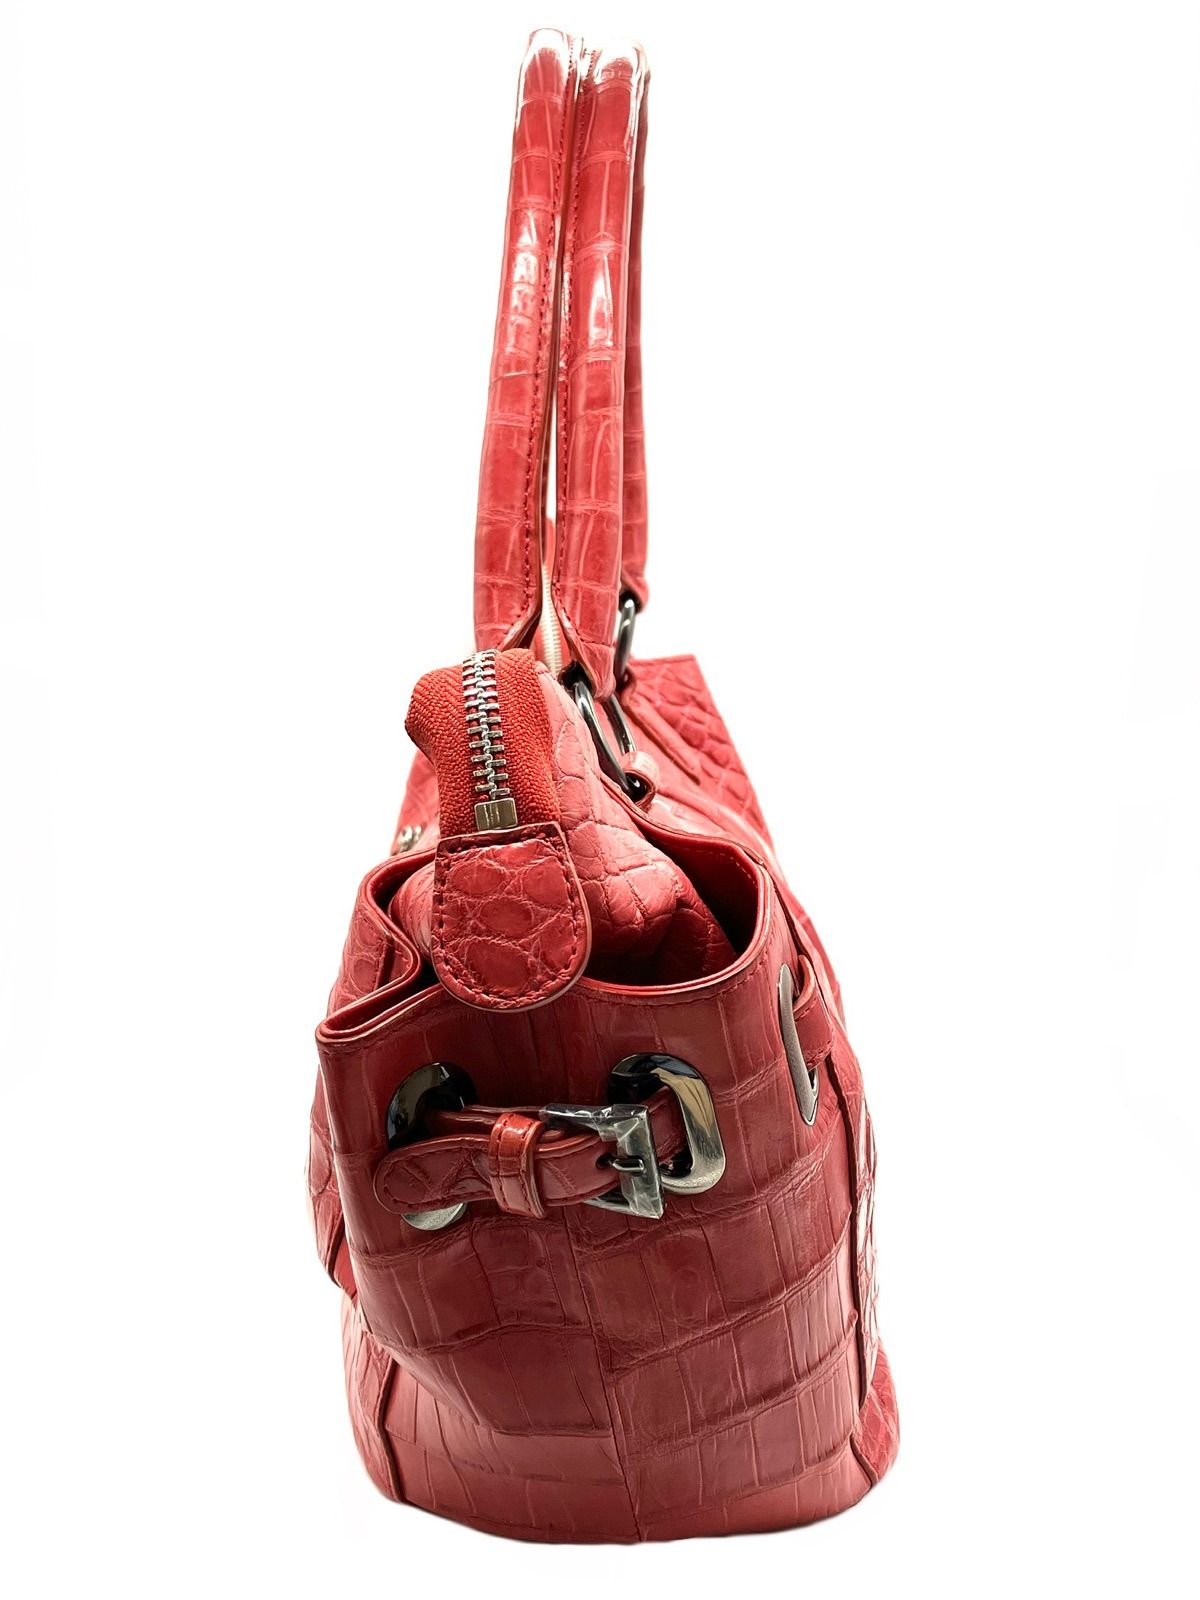 ハンドバッグ クロコダイル マット加工 赤 ハイビスカスレッド トートバッグ ファッション小物 本革 大容量 高品質 メンズ レディース ギフト  プレゼント